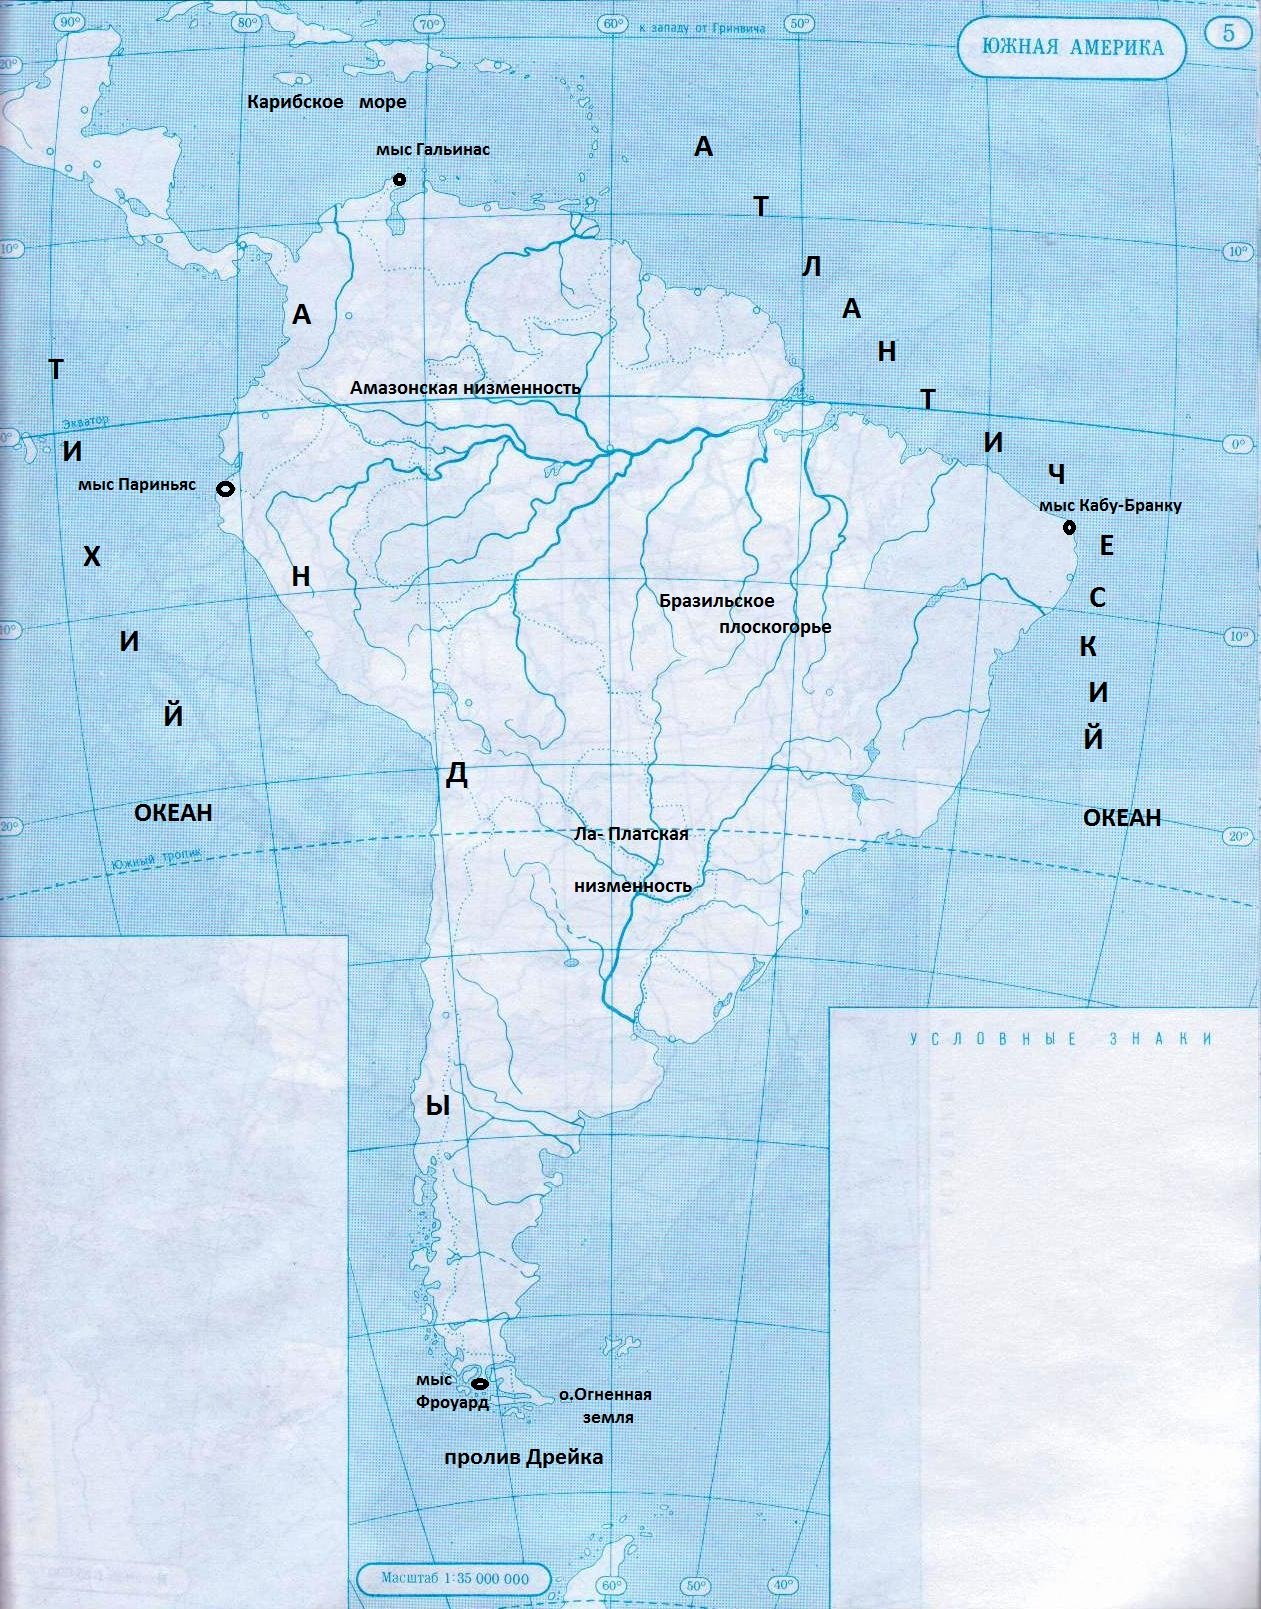 Озера южной америки 7 класс контурная карта. География 7 класс Южная Америка крайние точки материка. Крайние точки Южной Америки на контурной карте. Карта Южной Америки географическая крайние точки. Береговая линия Южной Америки 7 класс контурные карты.